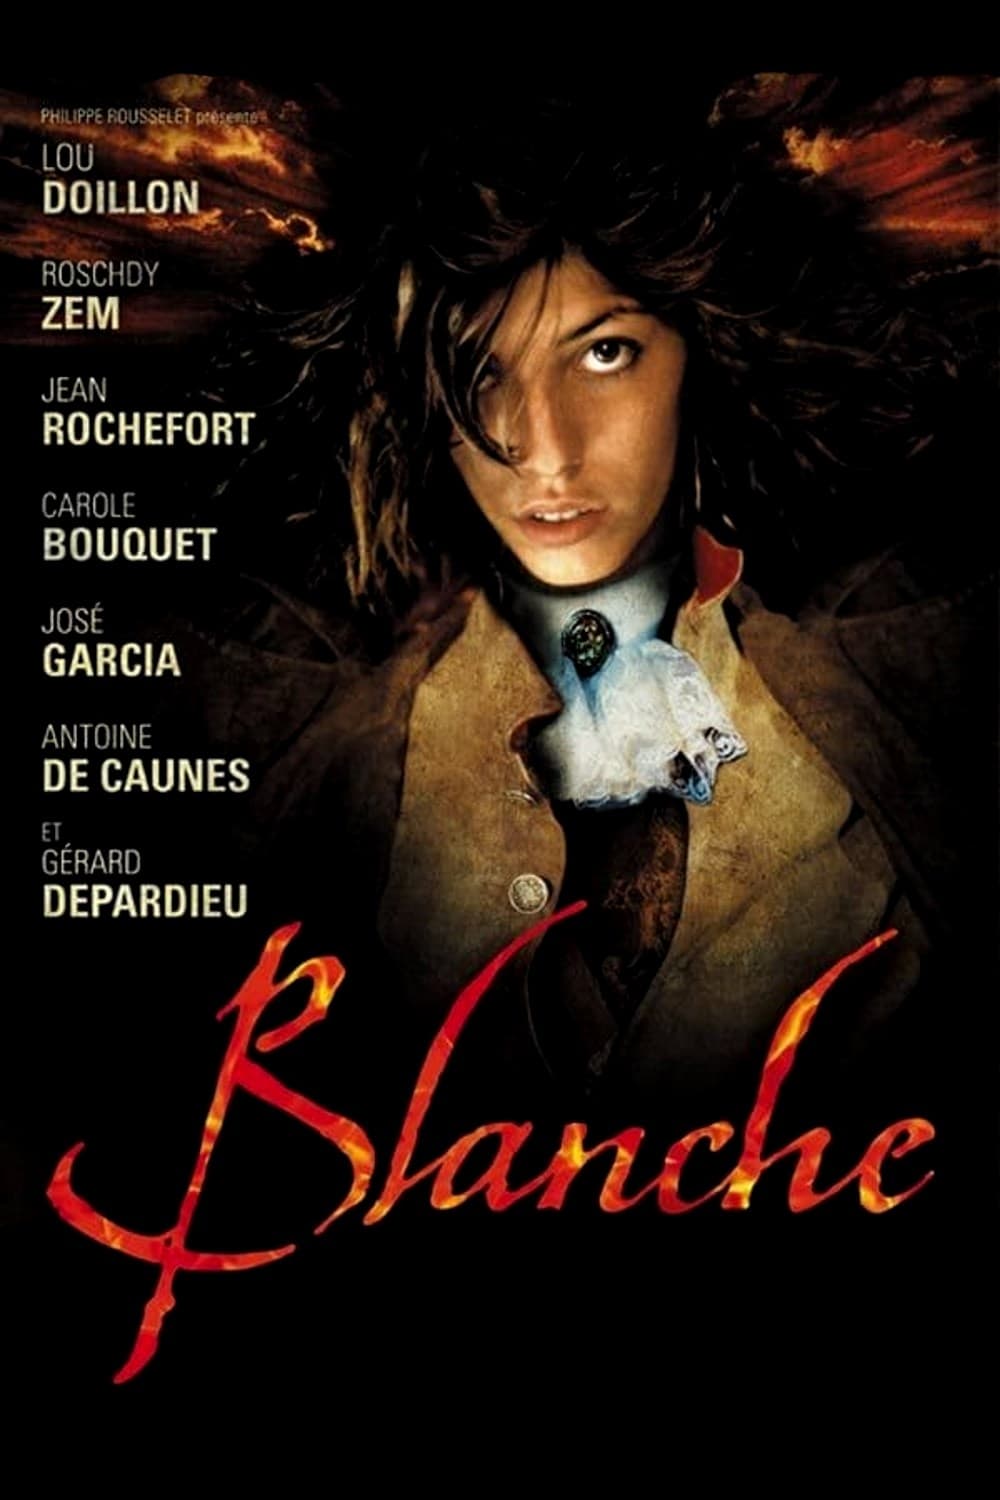 Blanche (2002)